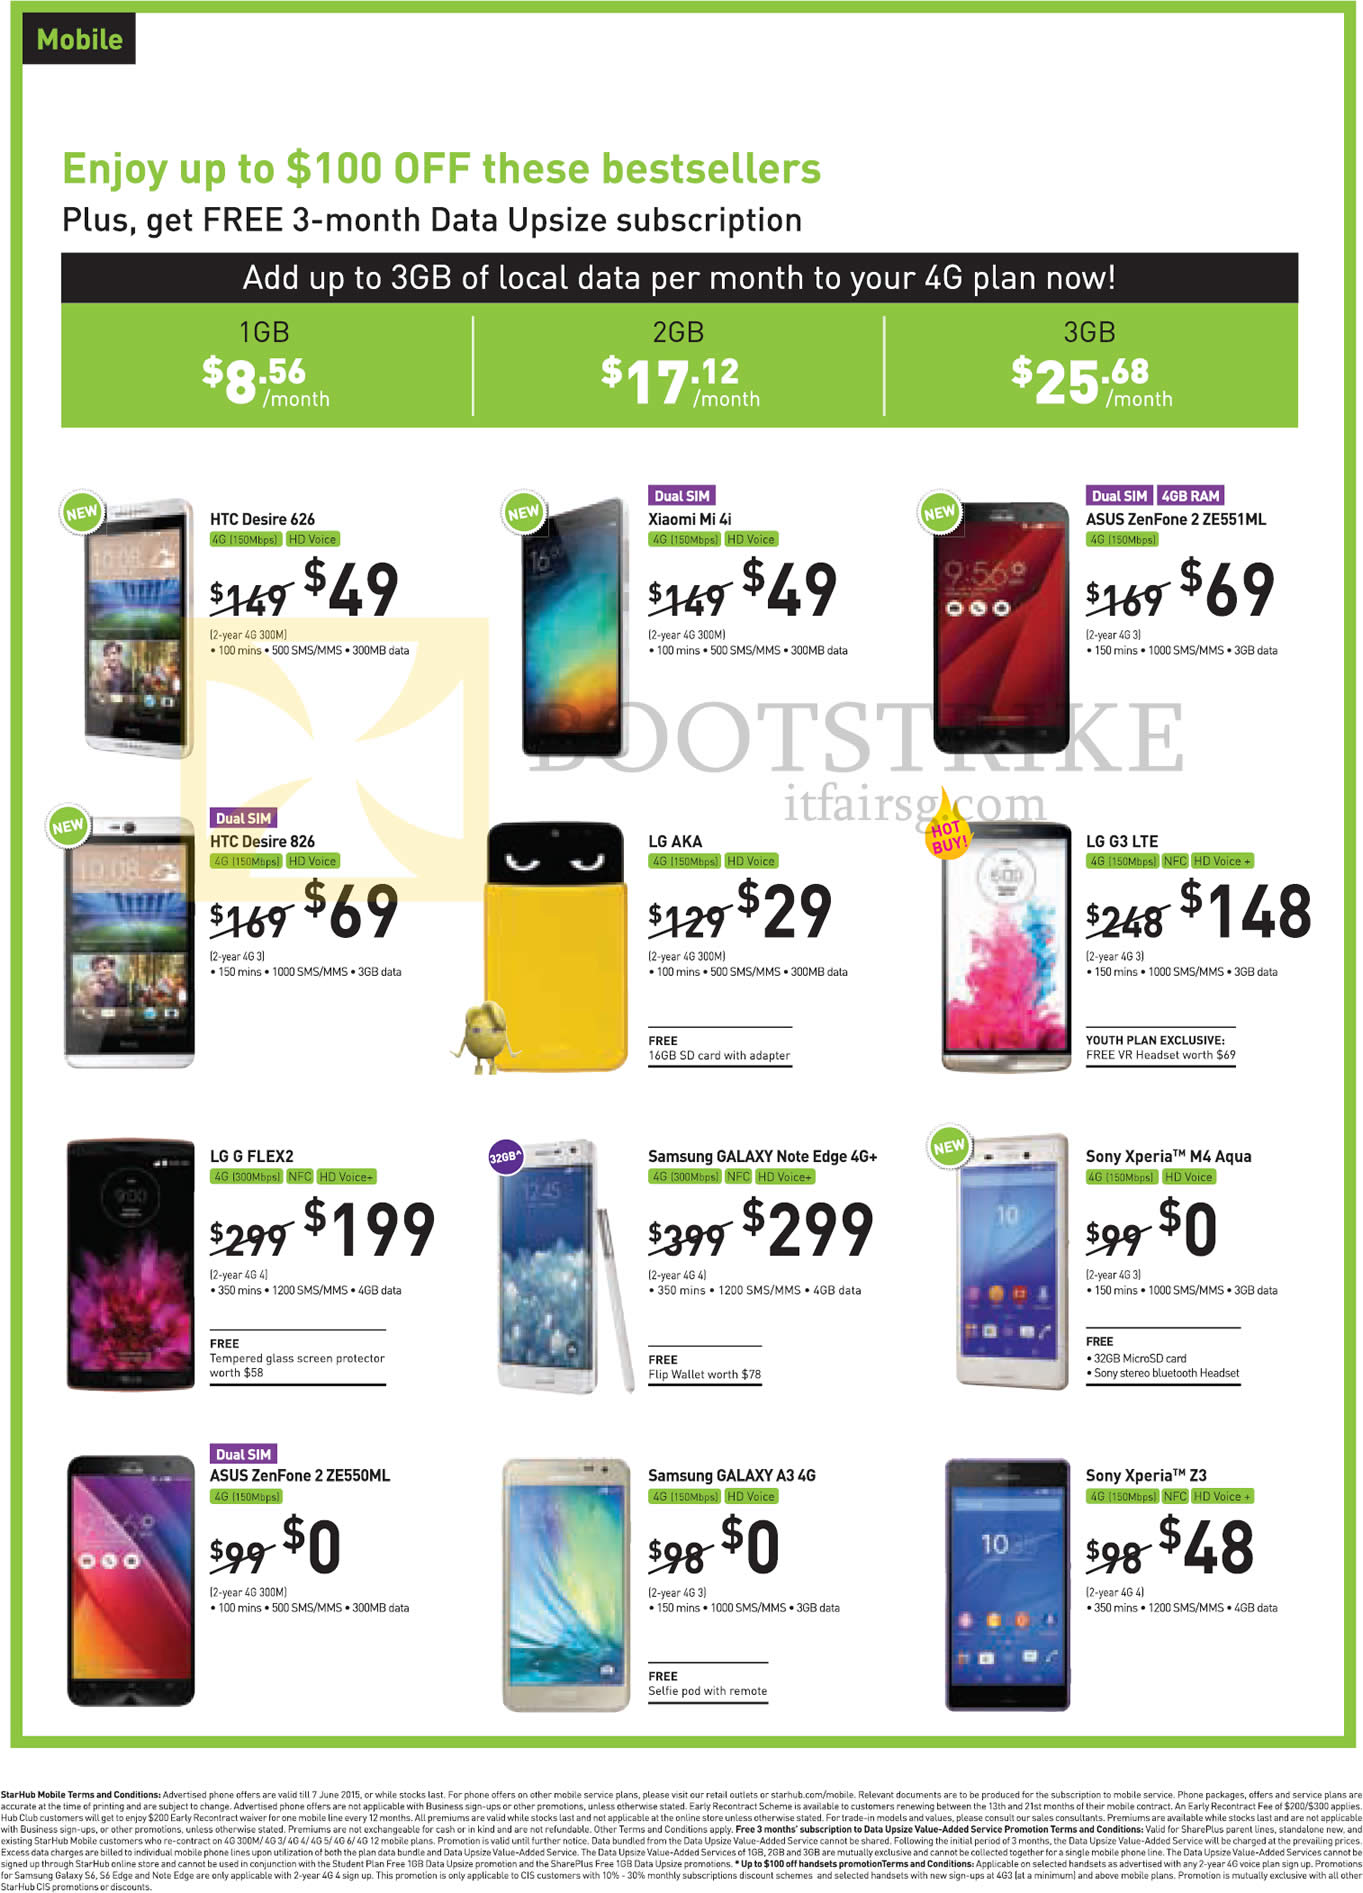 PC SHOW 2015 price list image brochure of Starhub ASUS ZenFone 2 ZE550ML ZE551 ML, HTC Desire 626 826, LG AKA G FLEX2 G3, Samsung GALAXY A3 Note Edge, Sony Xperia M4 Aqua Z3, Xiaomi Mi 4i